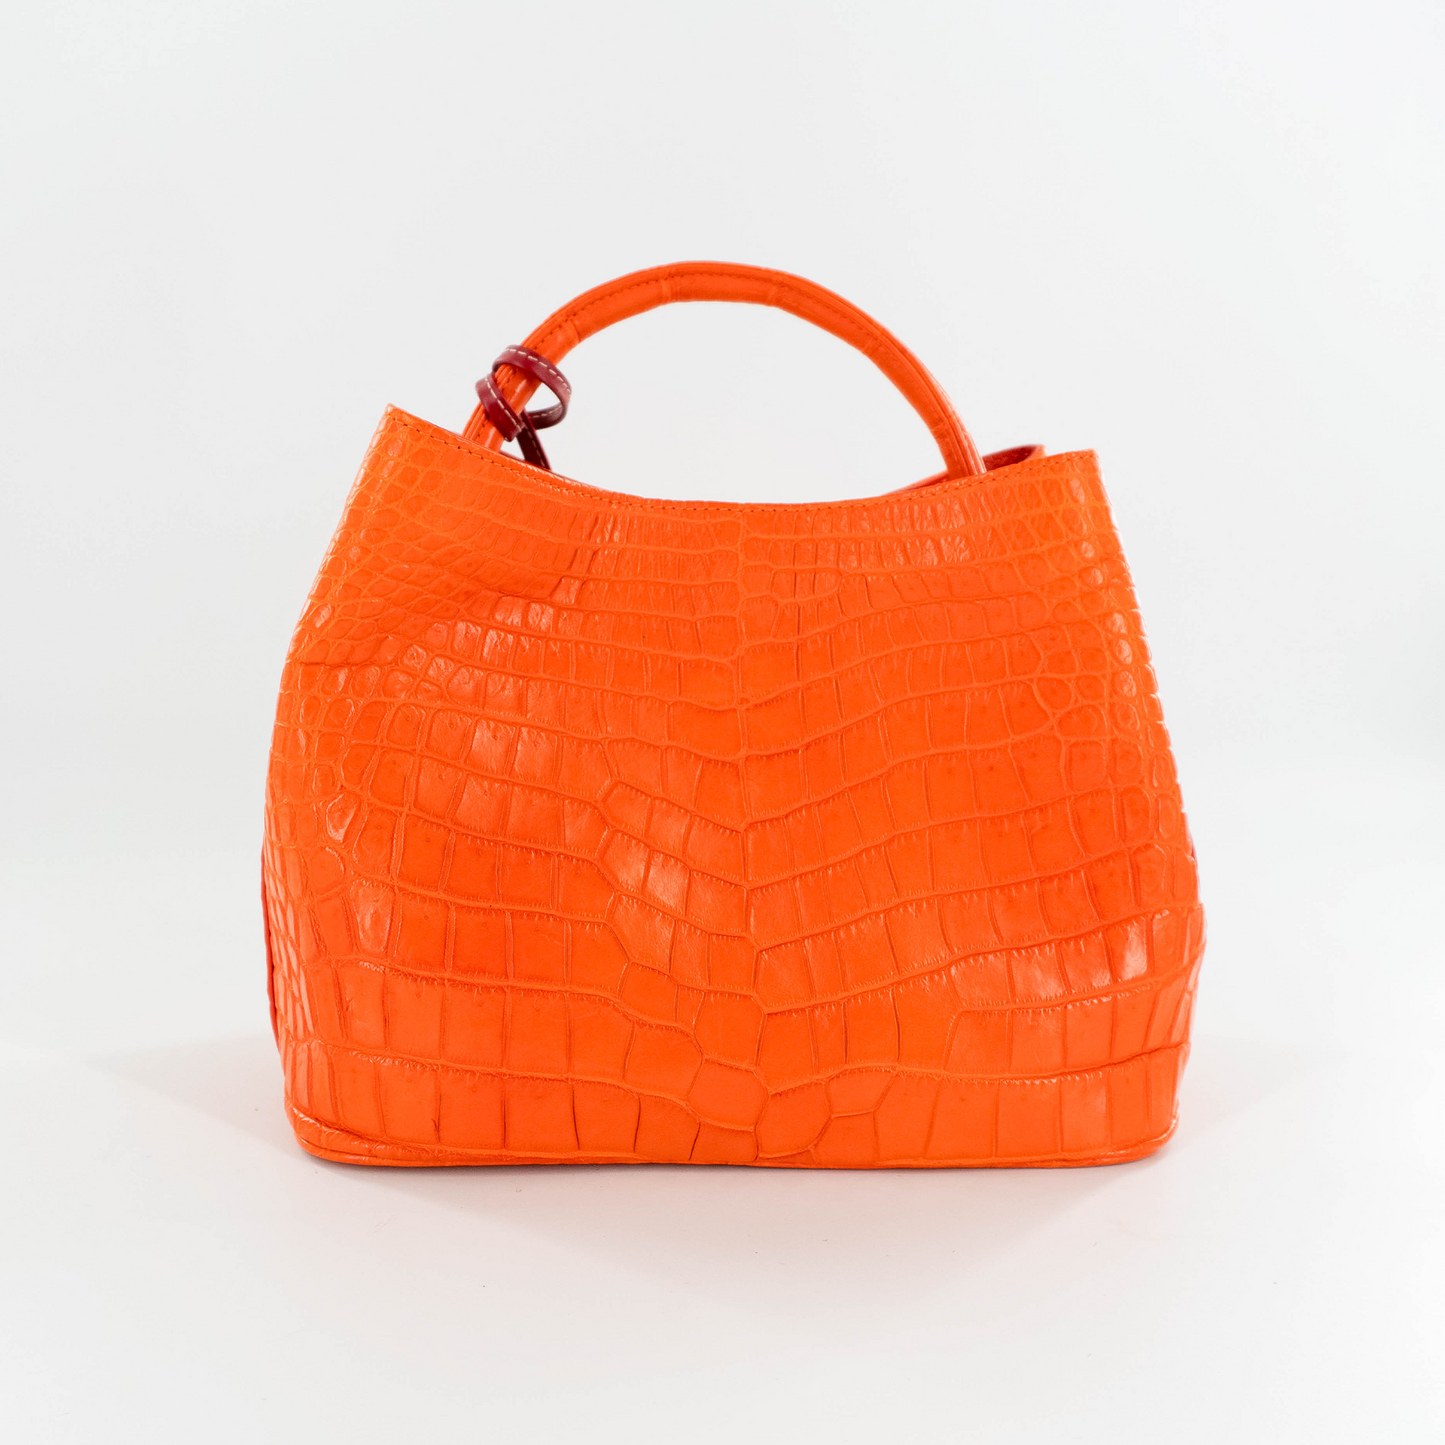 Darling Handbag in Orange Crocodile Belly Skin